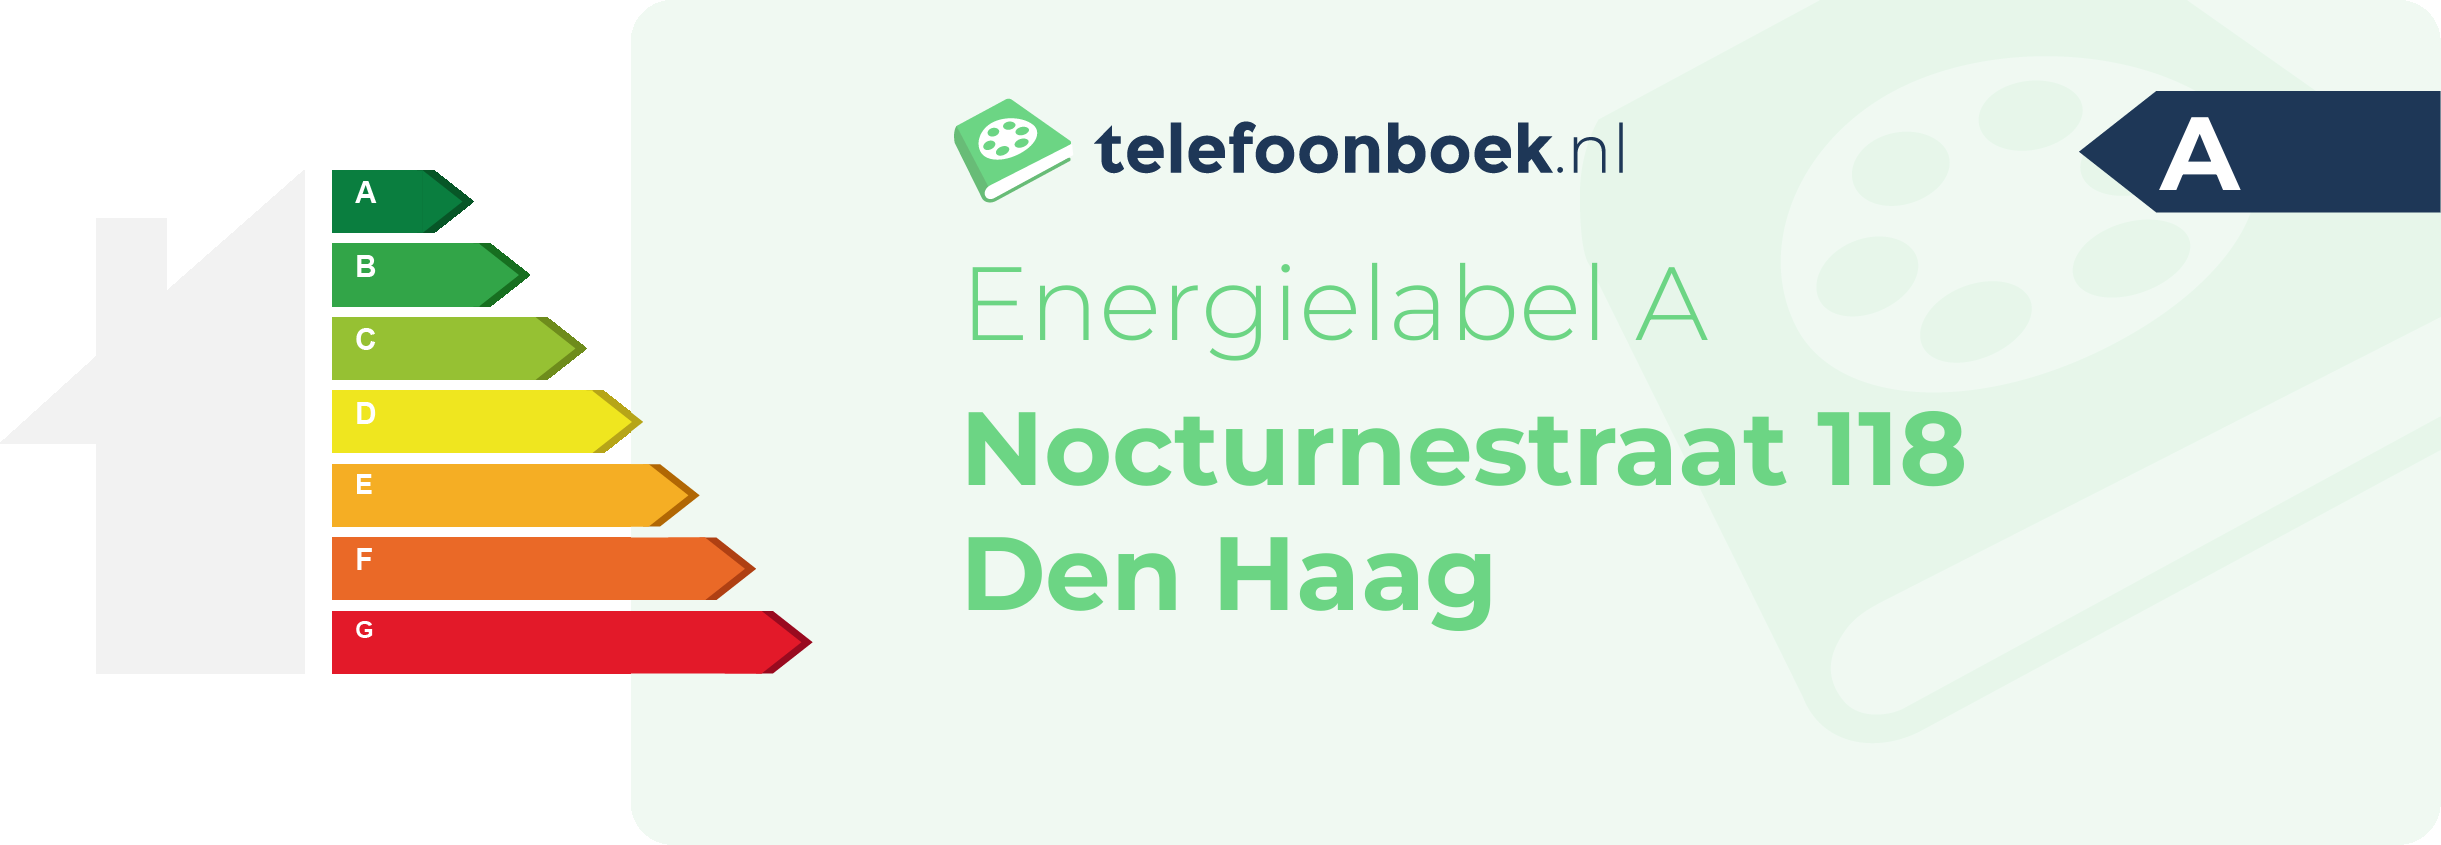 Energielabel Nocturnestraat 118 Den Haag